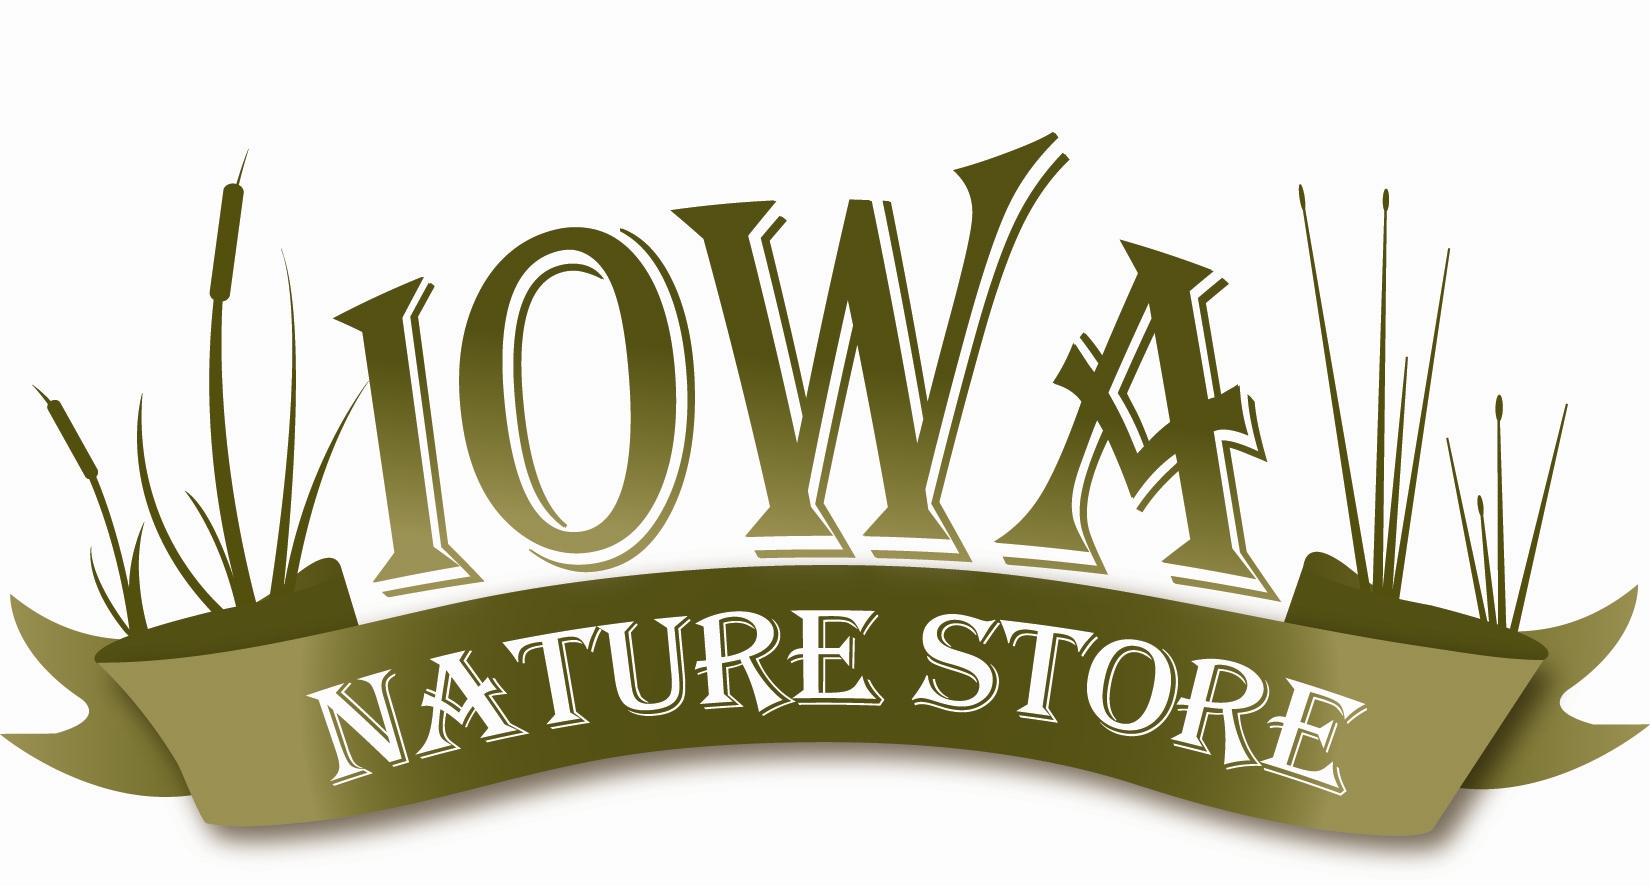 The Iowa Nature Store